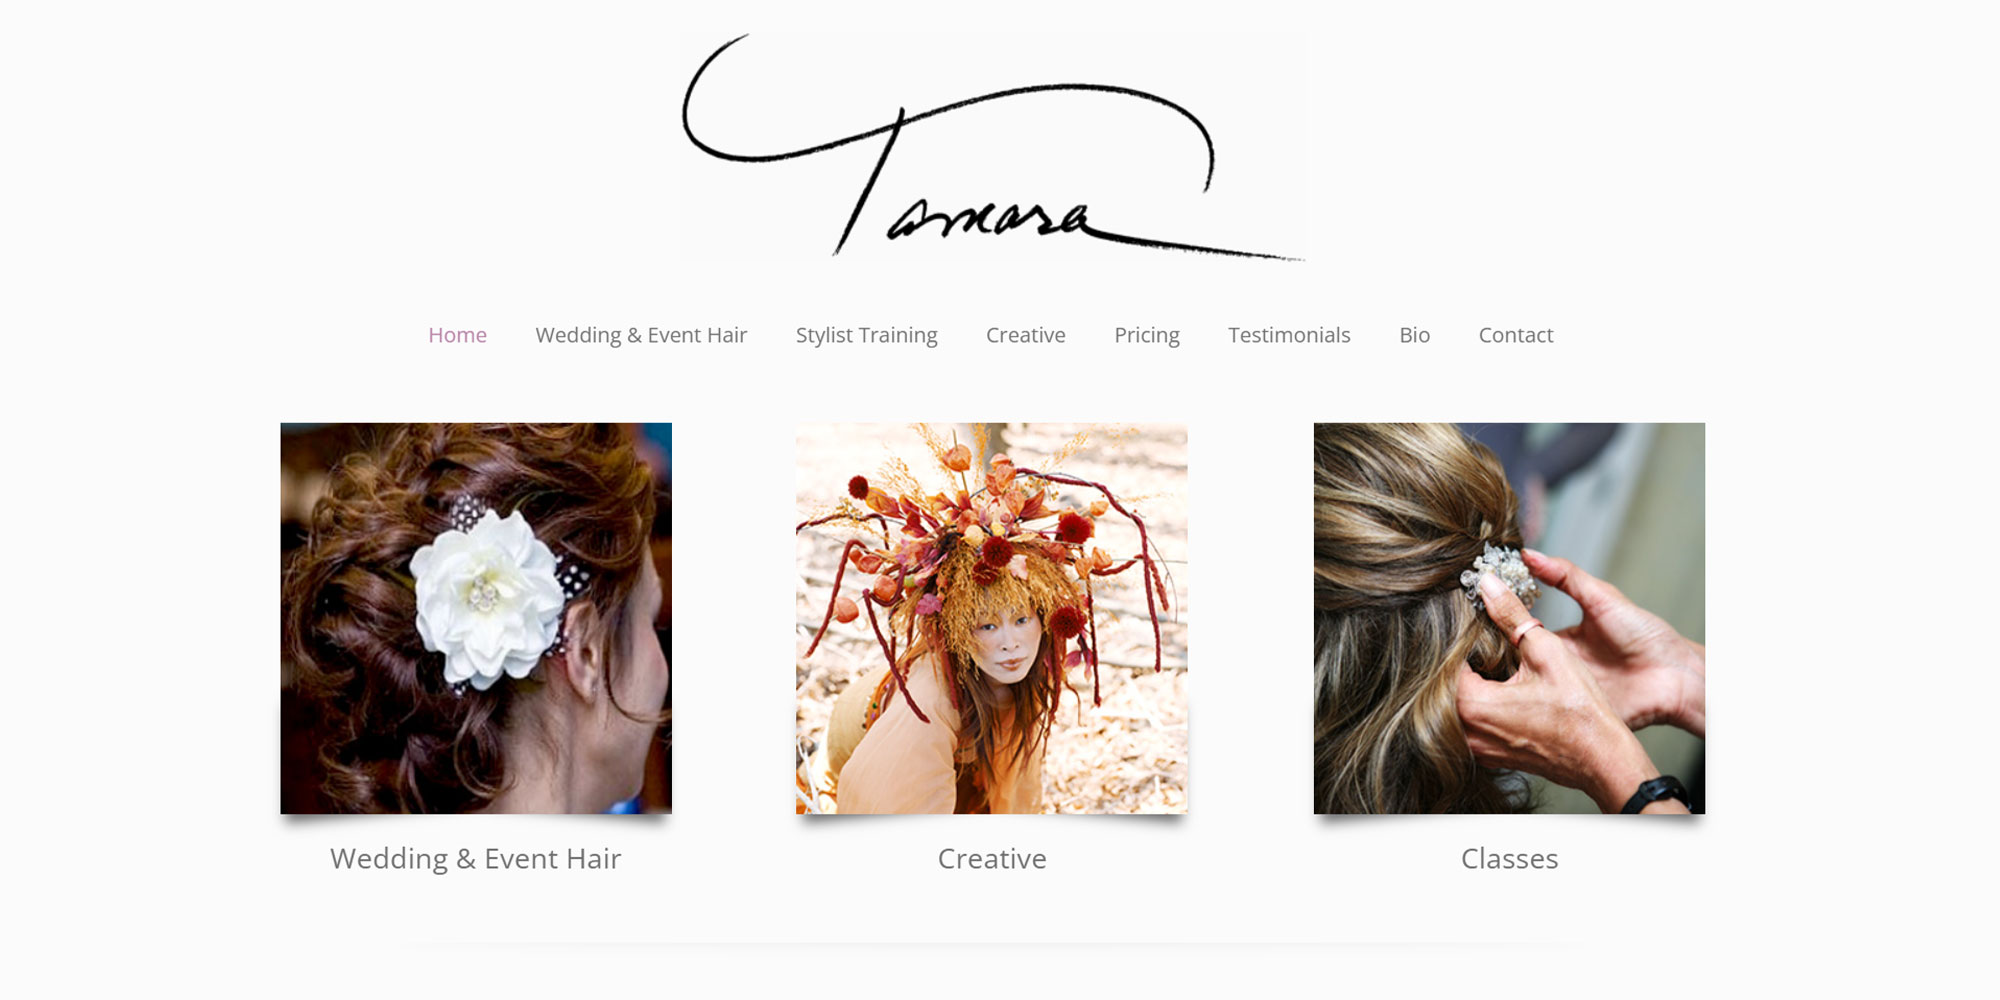 TamaraNewYork.com home page screenshot for the Boheema.com web design portfolio